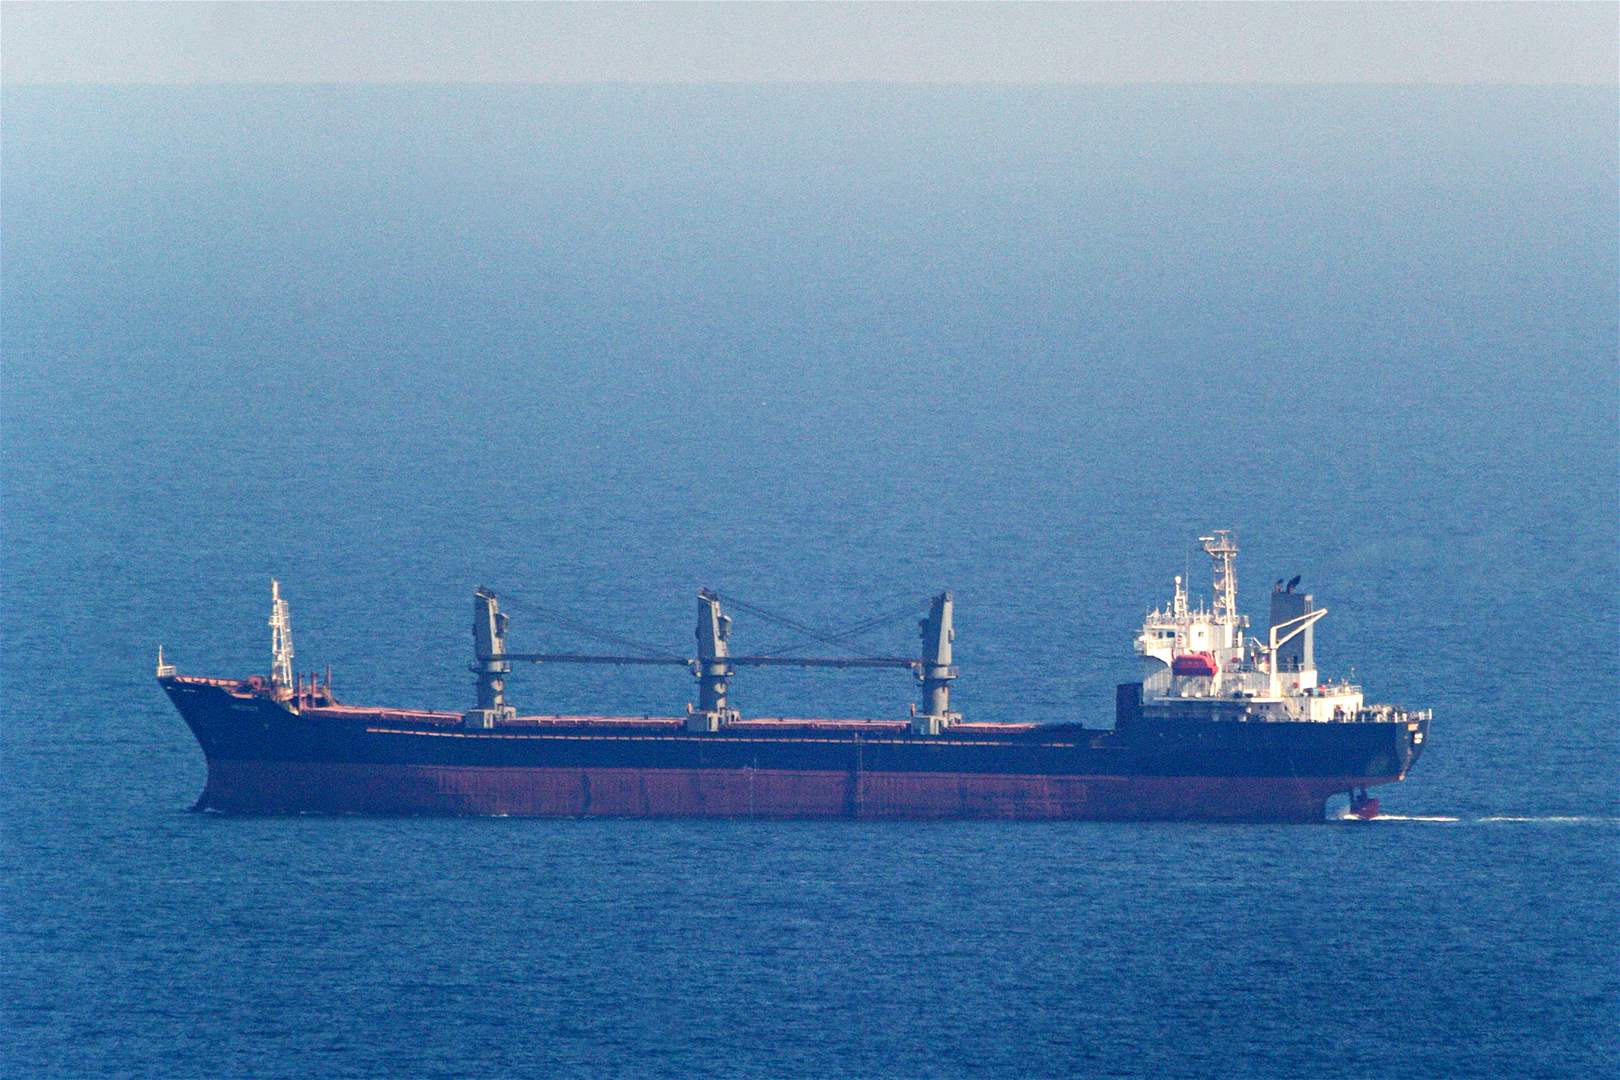  وصول ثاني سفينة قمح أوكراني إلى اسطنبول عبر البحر الأسود منذ انتهاء العمل بالاتفاق الدولي 